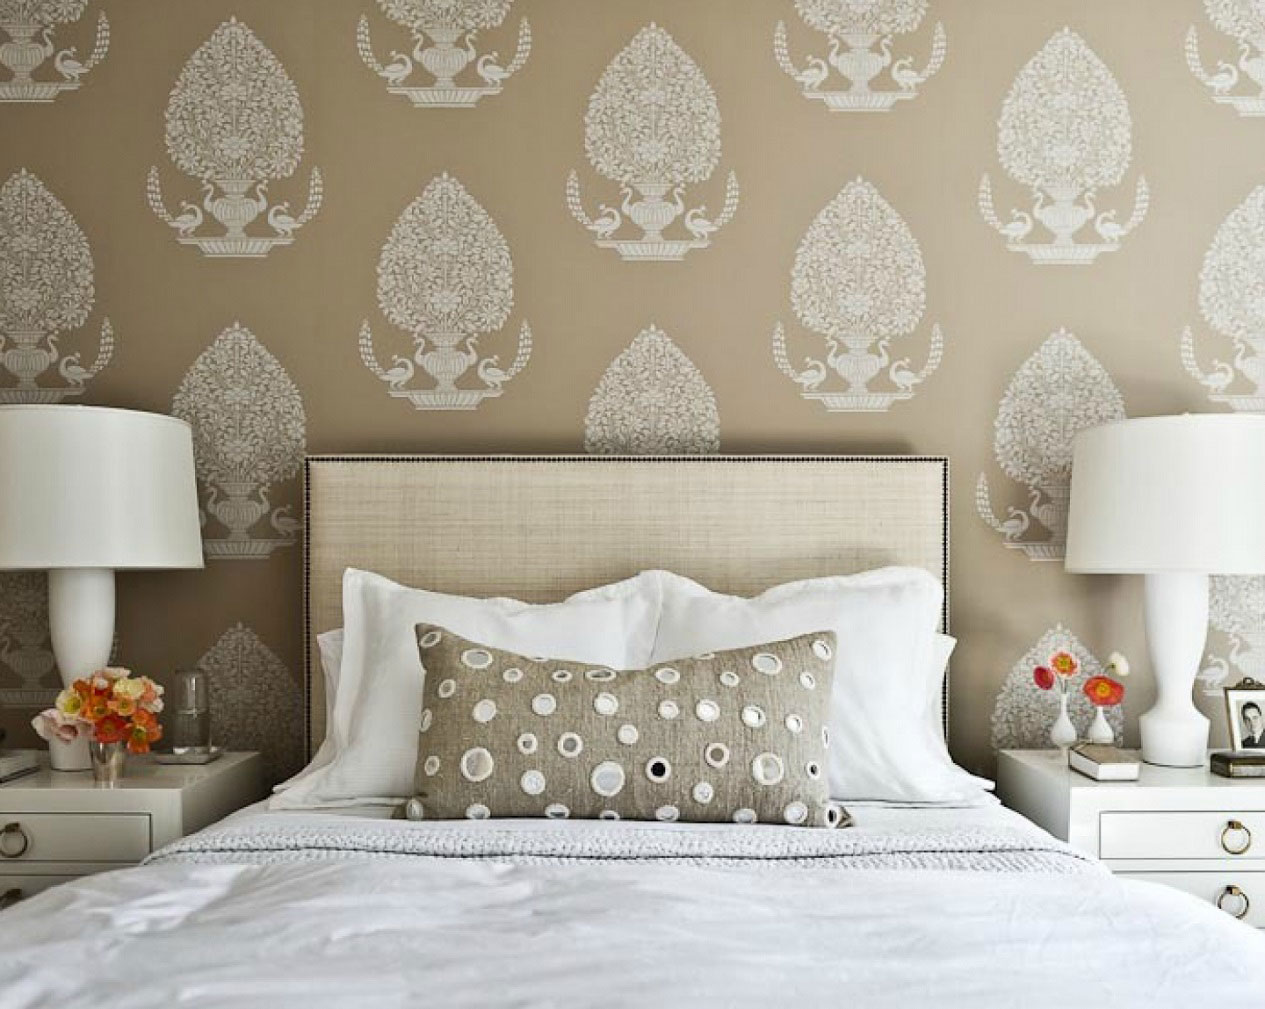 Free Download 30 Best Diy Wallpaper Designs For Bedrooms Uk